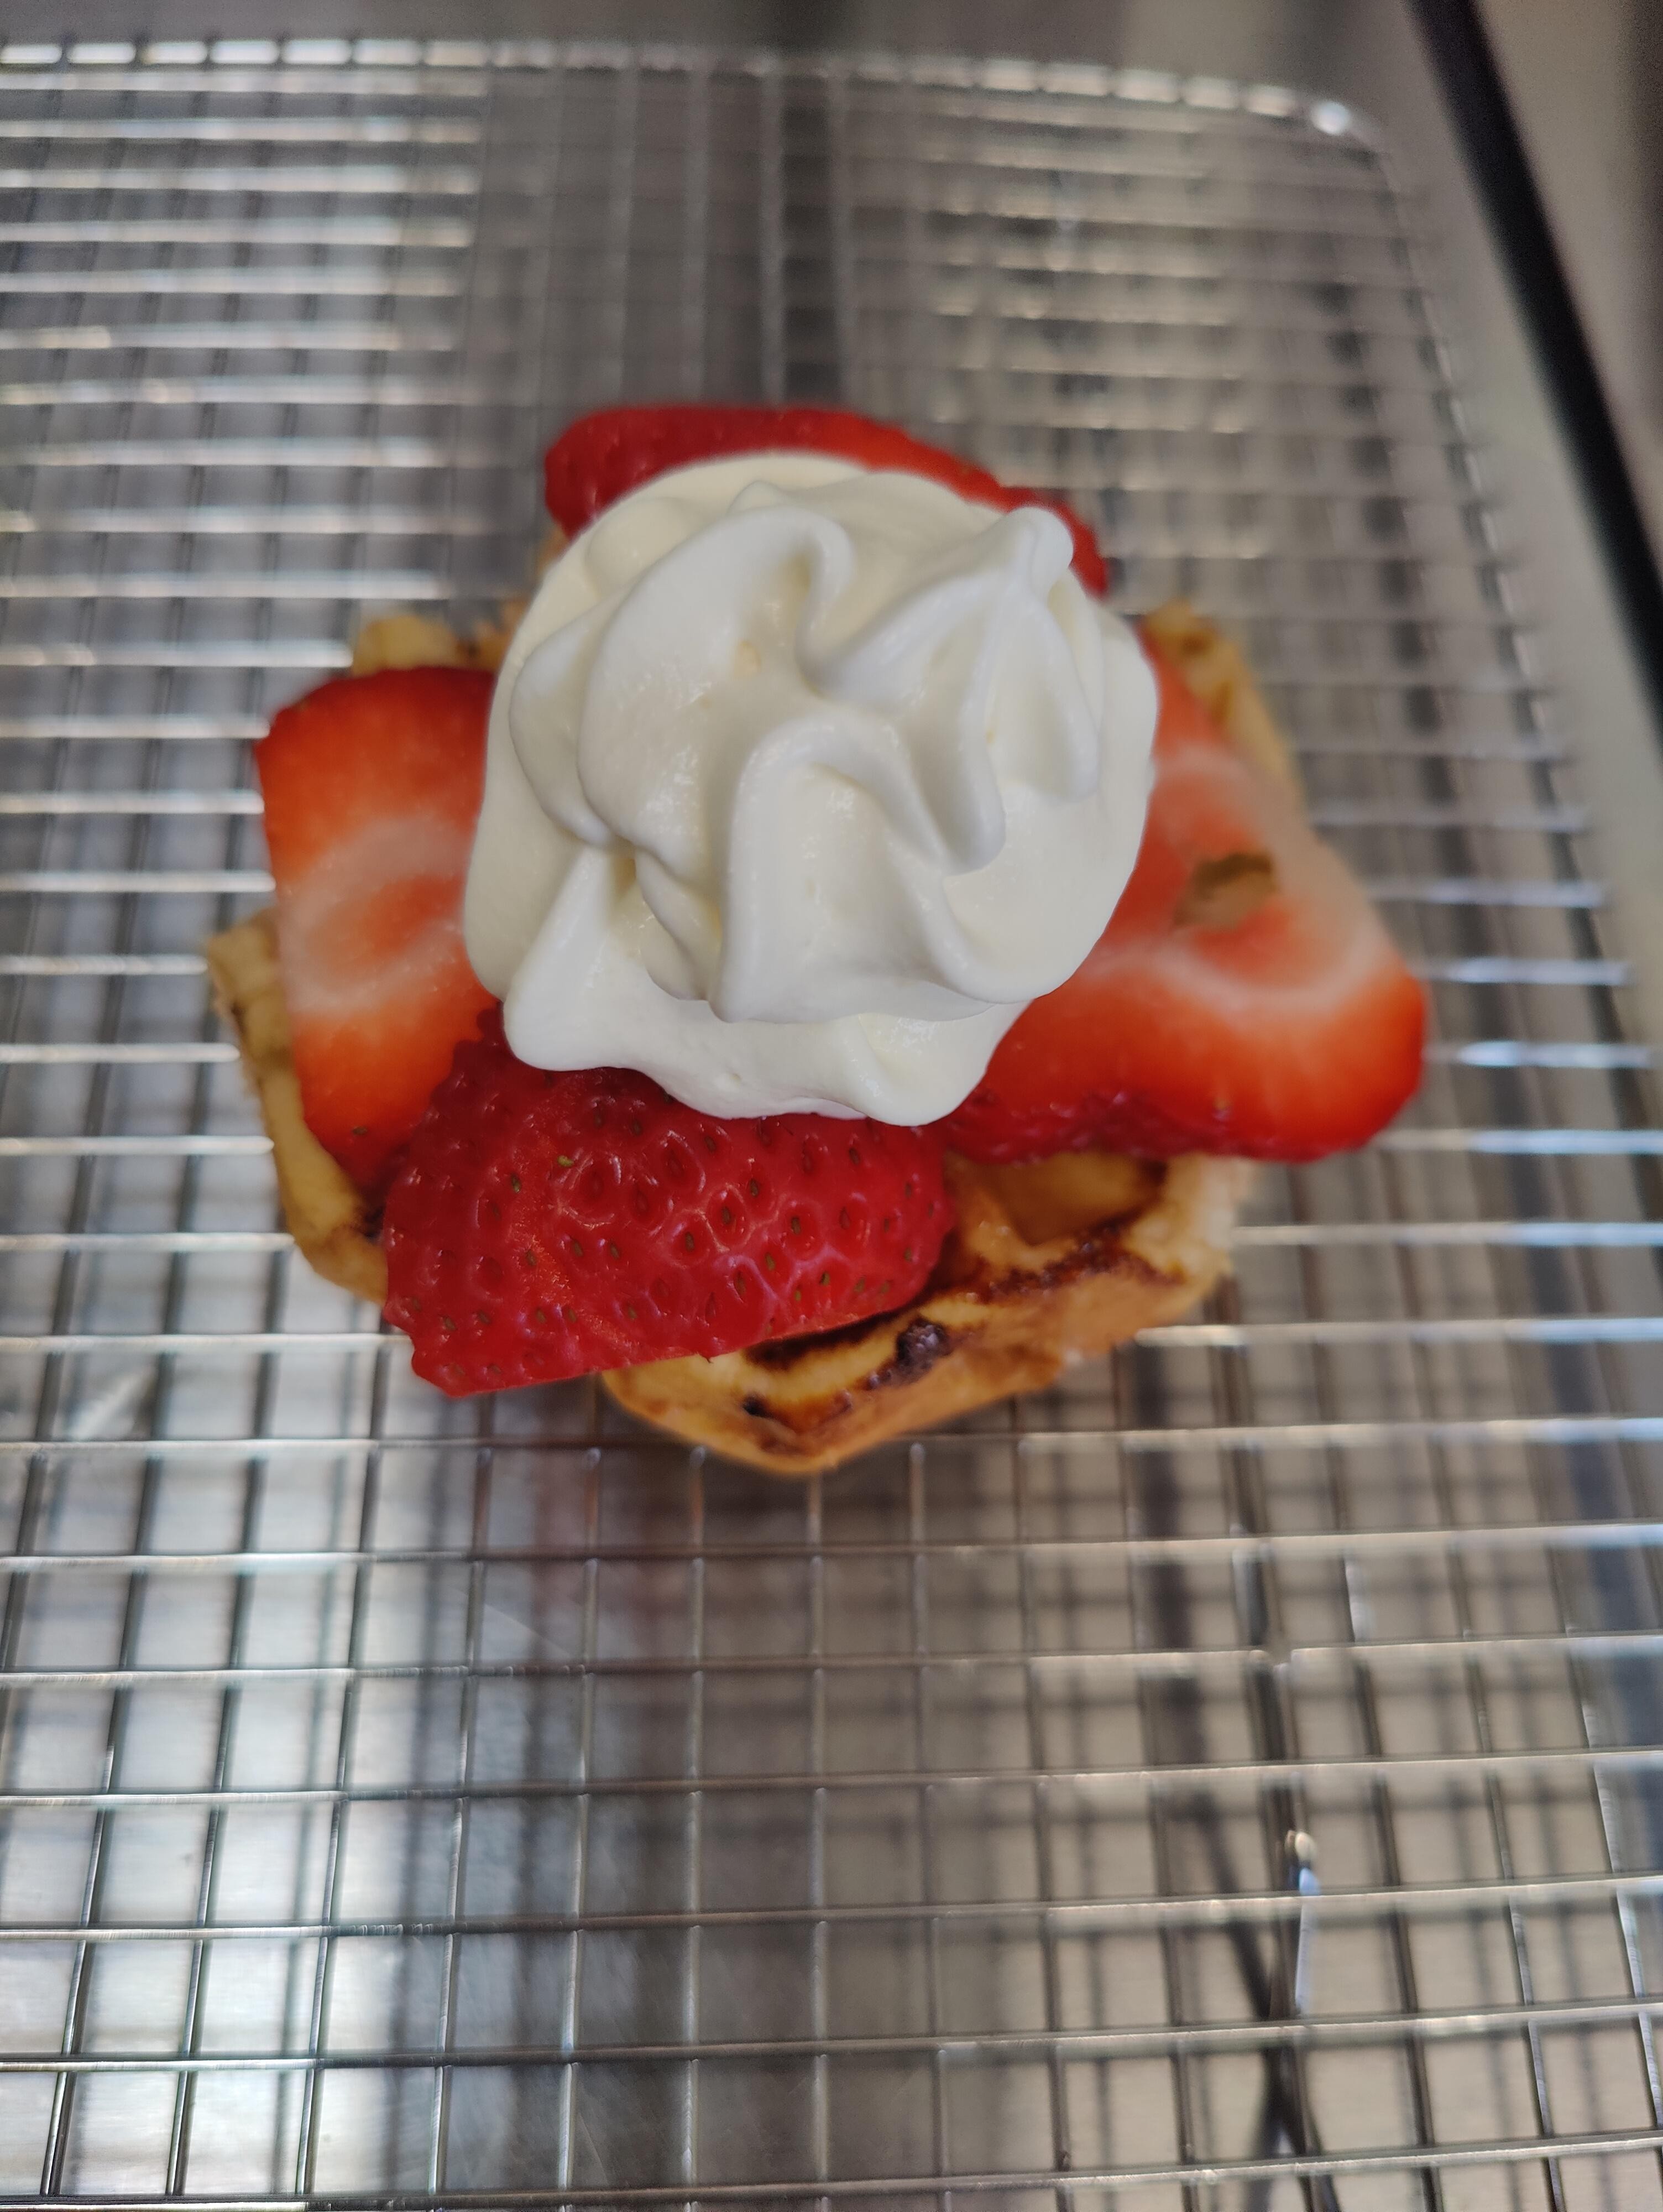 Strawberries & Cream Waffle